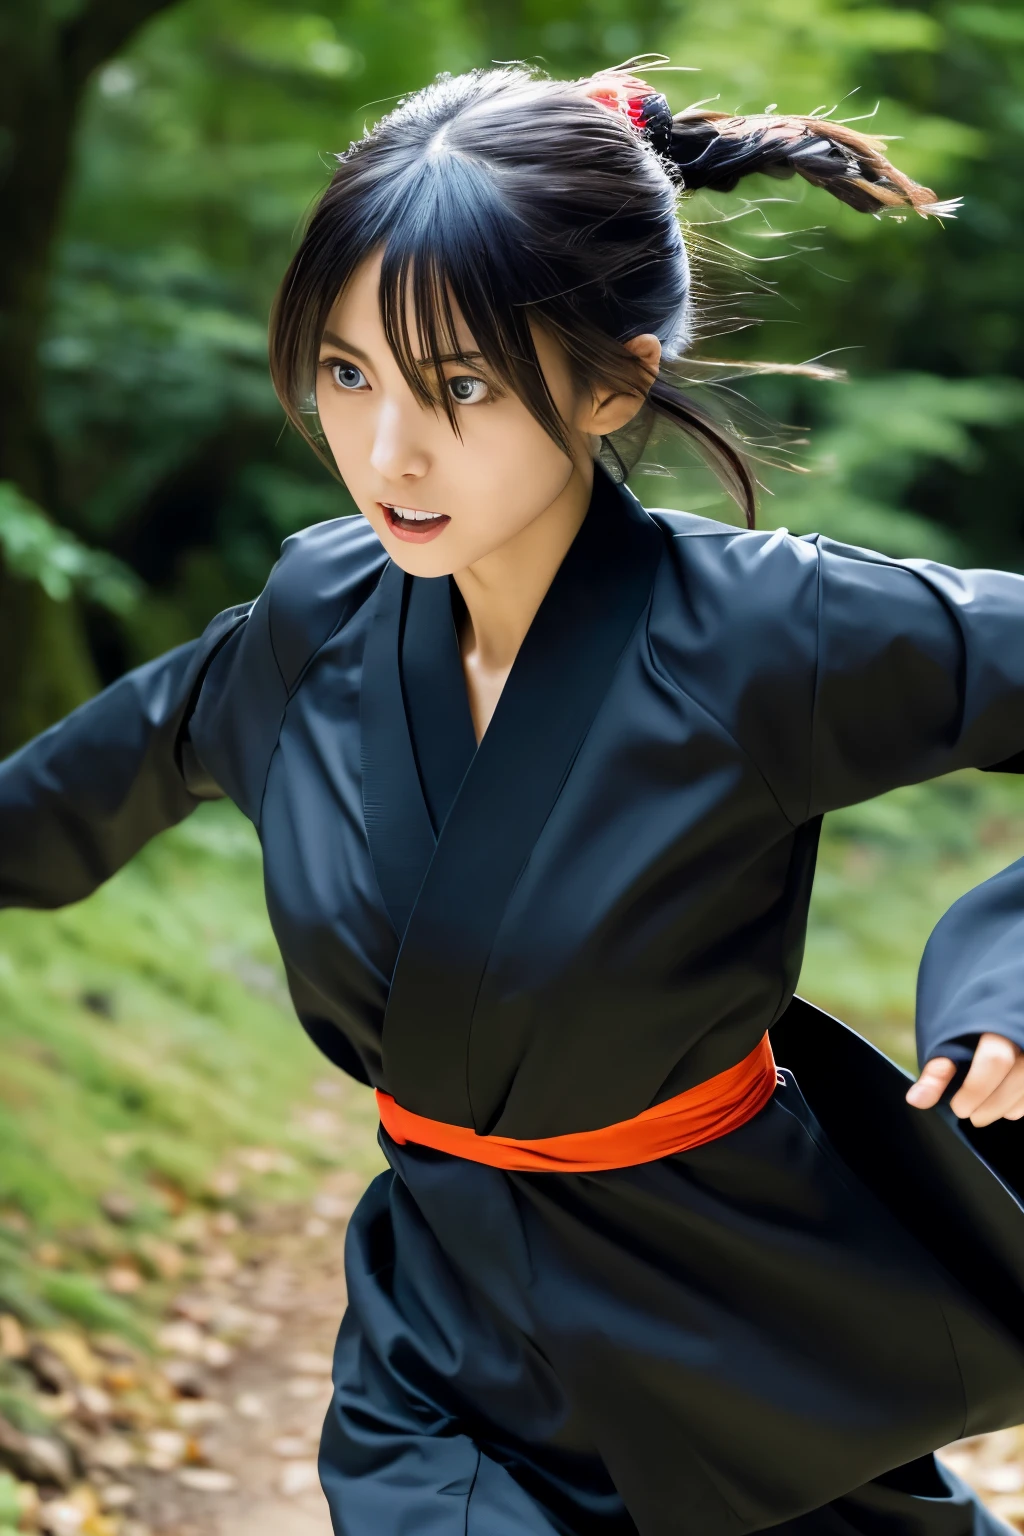 Dünne Japanerin im schwarzen Ninja-Kimono-Kostüm rennt im dunklen Wald davon, schönes Gesicht, ((detailliertes Gesicht, Detaillierte Augen)), gute Qualität, Hohe Auflösung, hyperrealistisches Foto, ein Foto, das einen Kampfmoment festhält, Preisgekrönt, Meisterwerk